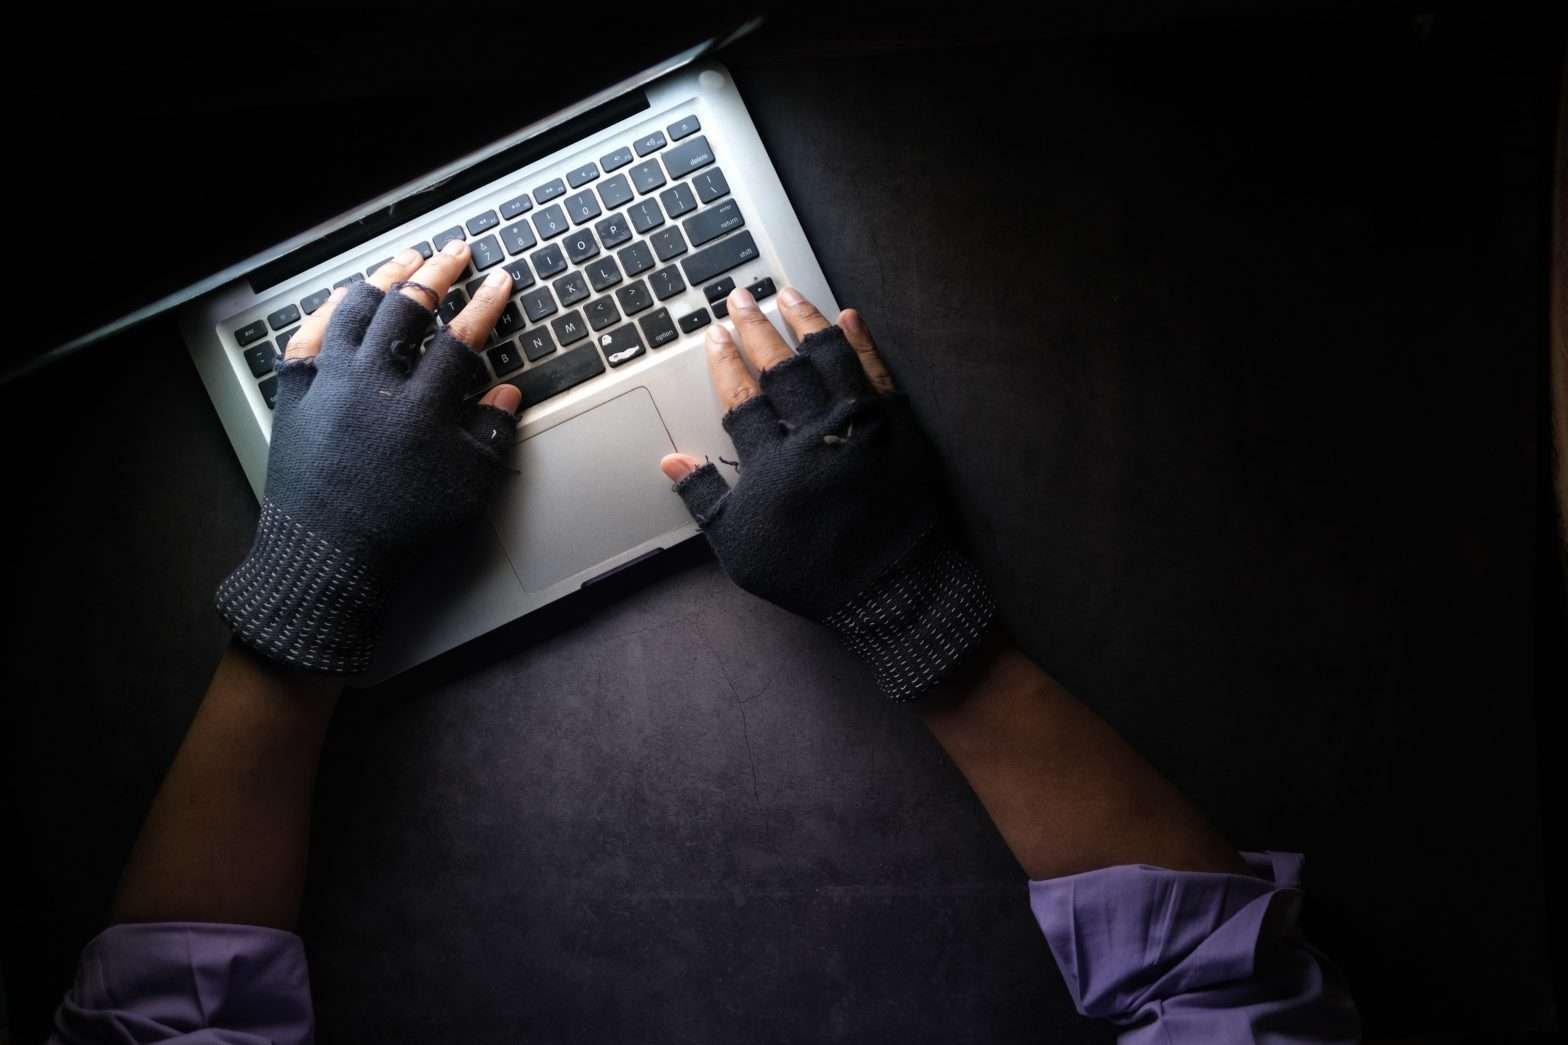 Homem com as mãos cobertas com luva em cima do teclado de um notebook